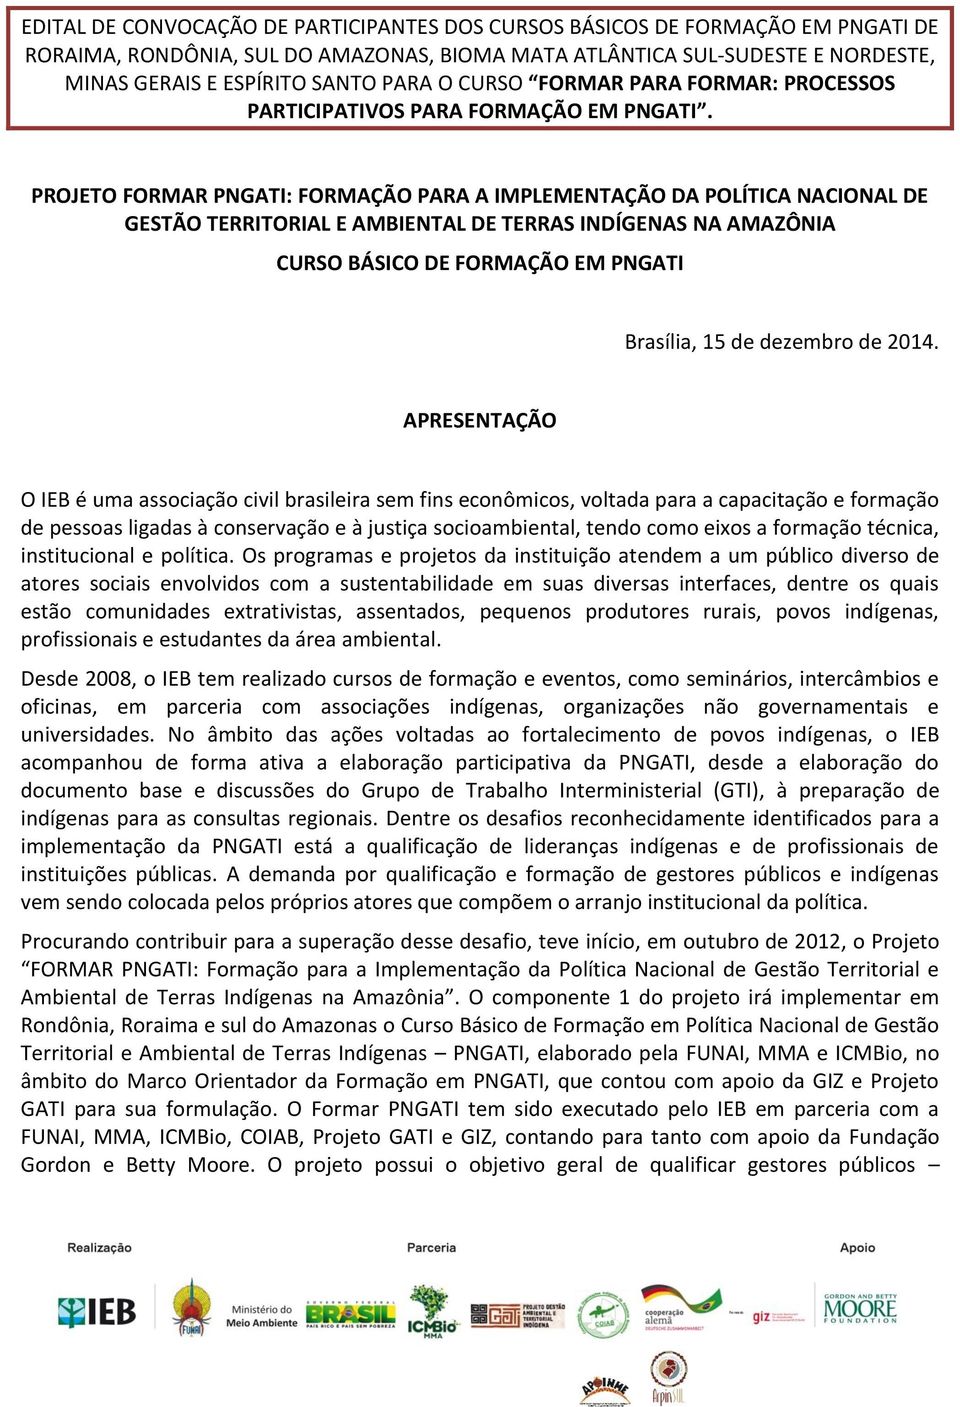 PROJETO FORMAR PNGATI: FORMAÇÃO PARA A IMPLEMENTAÇÃO DA POLÍTICA NACIONAL DE GESTÃO TERRITORIAL E AMBIENTAL DE TERRAS INDÍGENAS NA AMAZÔNIA CURSO BÁSICO DE FORMAÇÃO EM PNGATI Brasília, 15 de dezembro